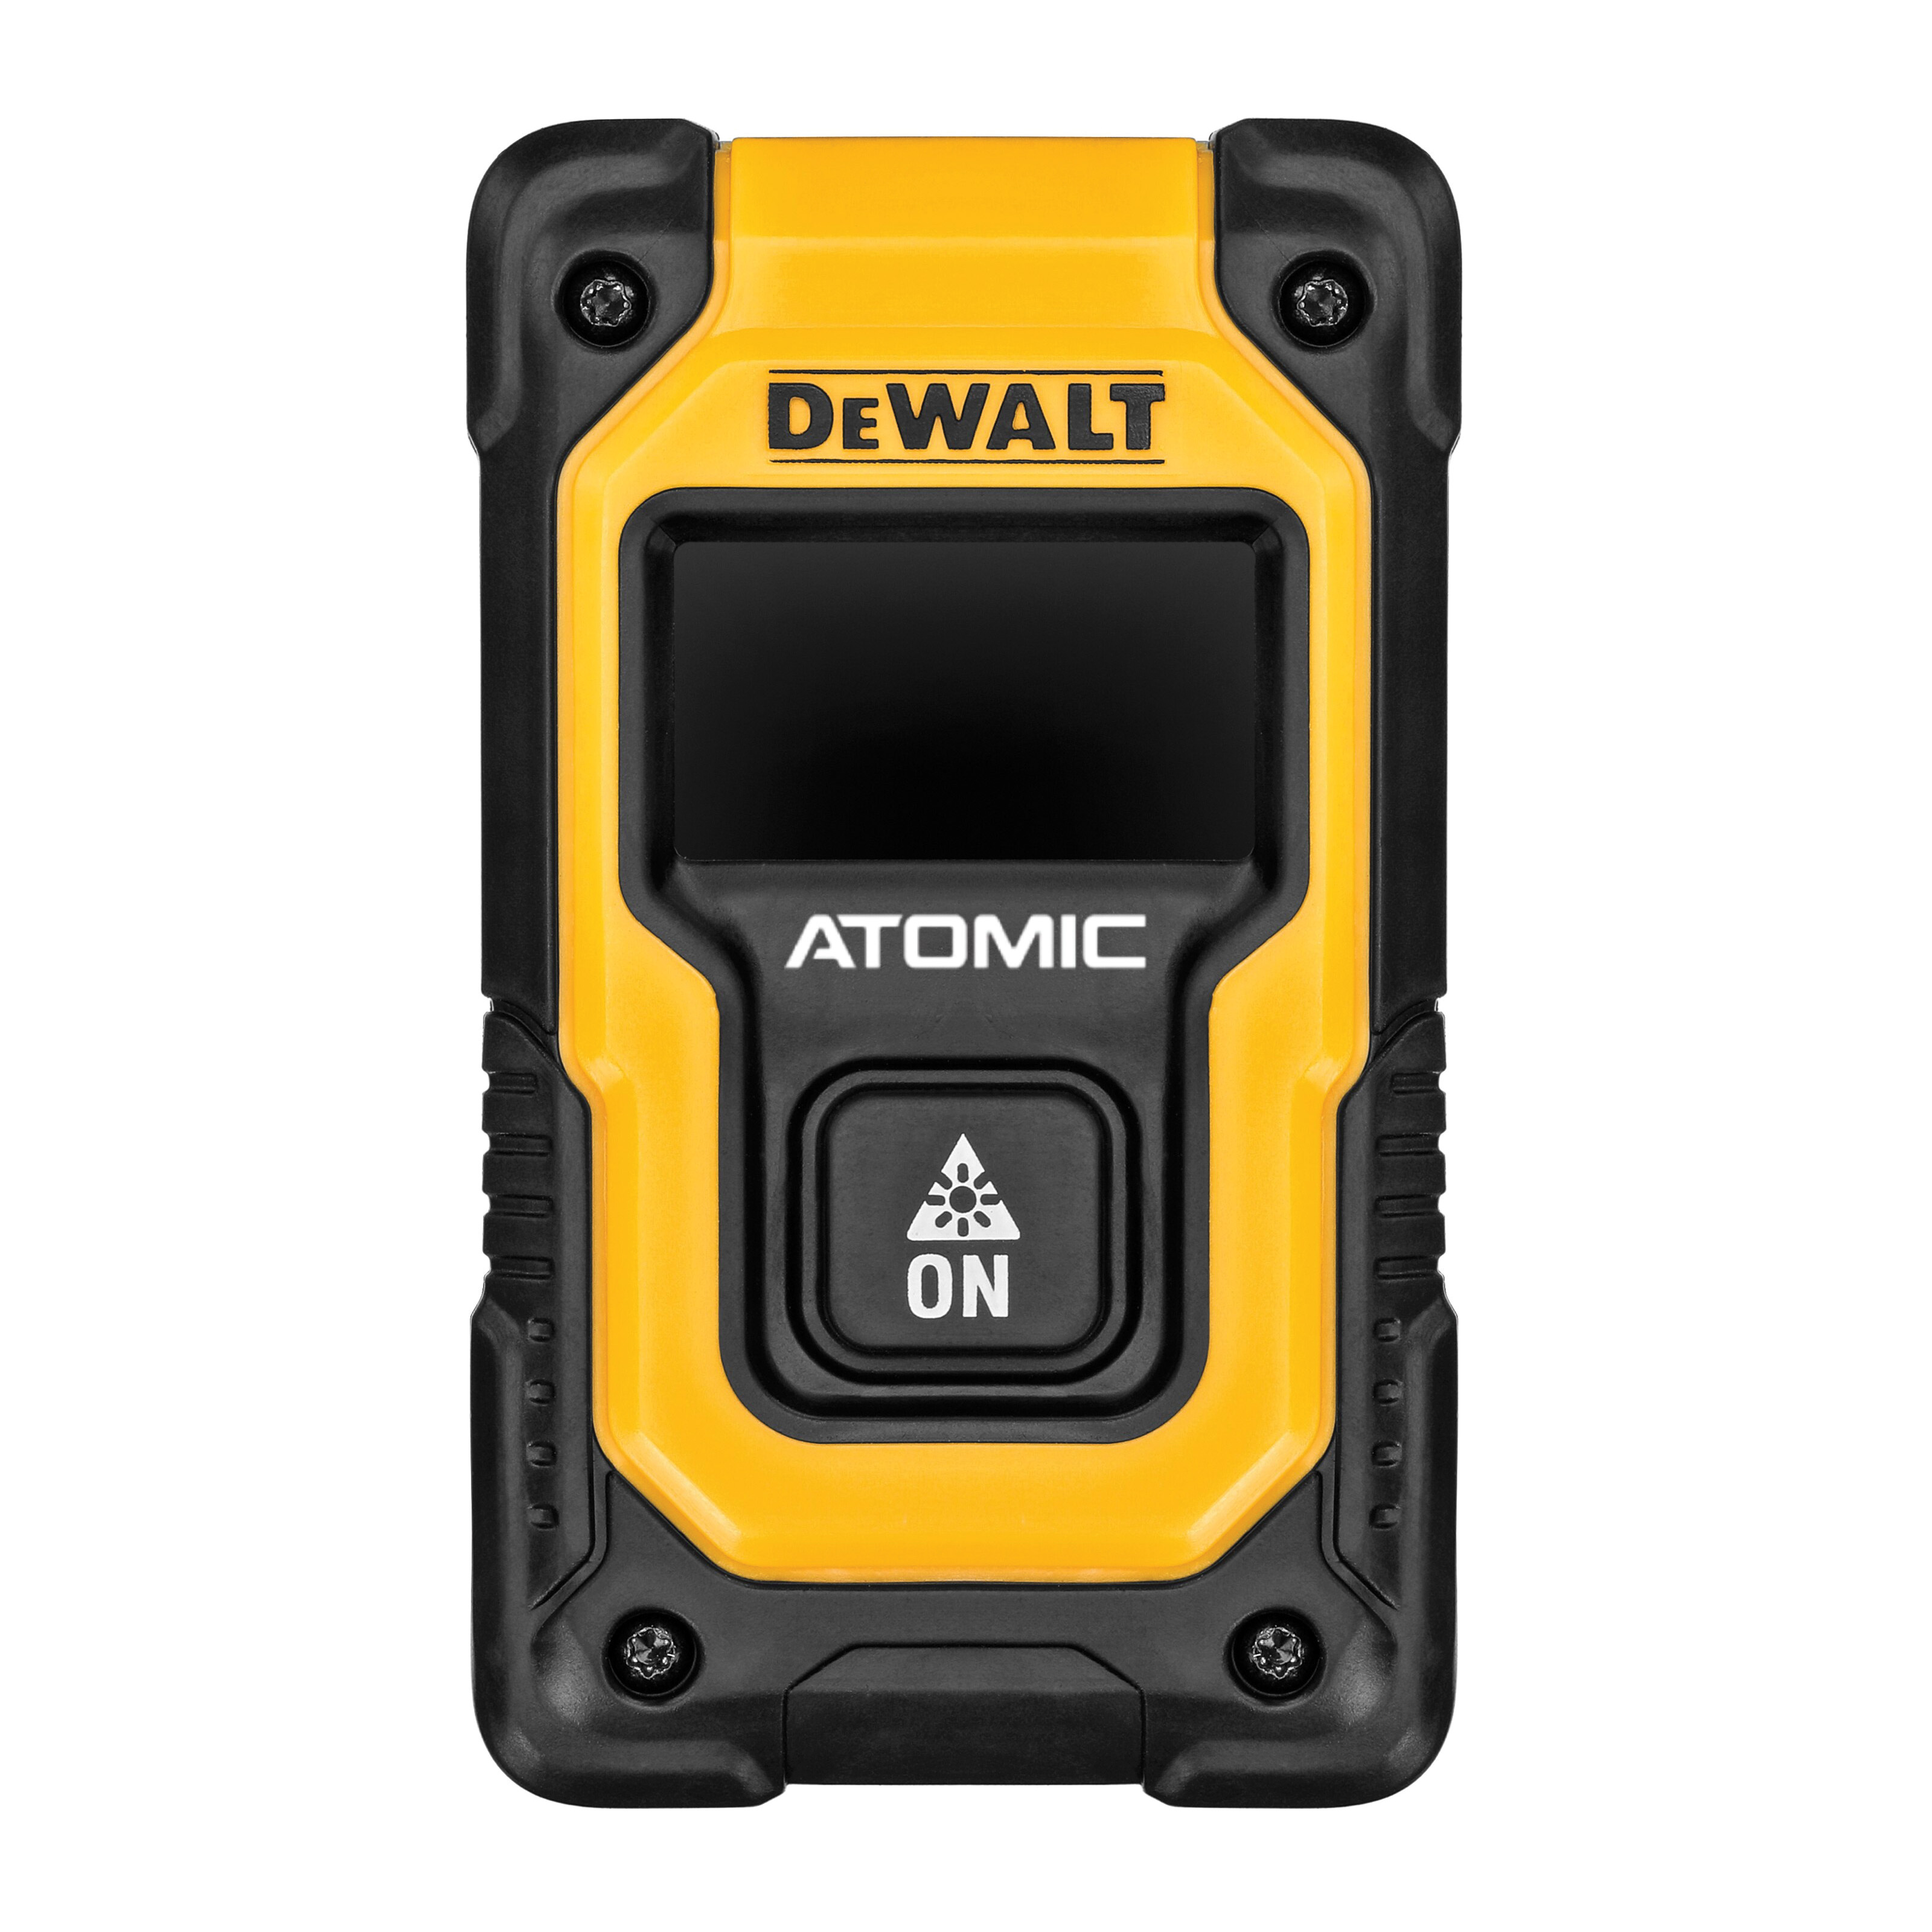 DeWALT Atomic Compact Series DW055PL Pocket Laser Distance Measurer, 55 ft, LCD Display - 1